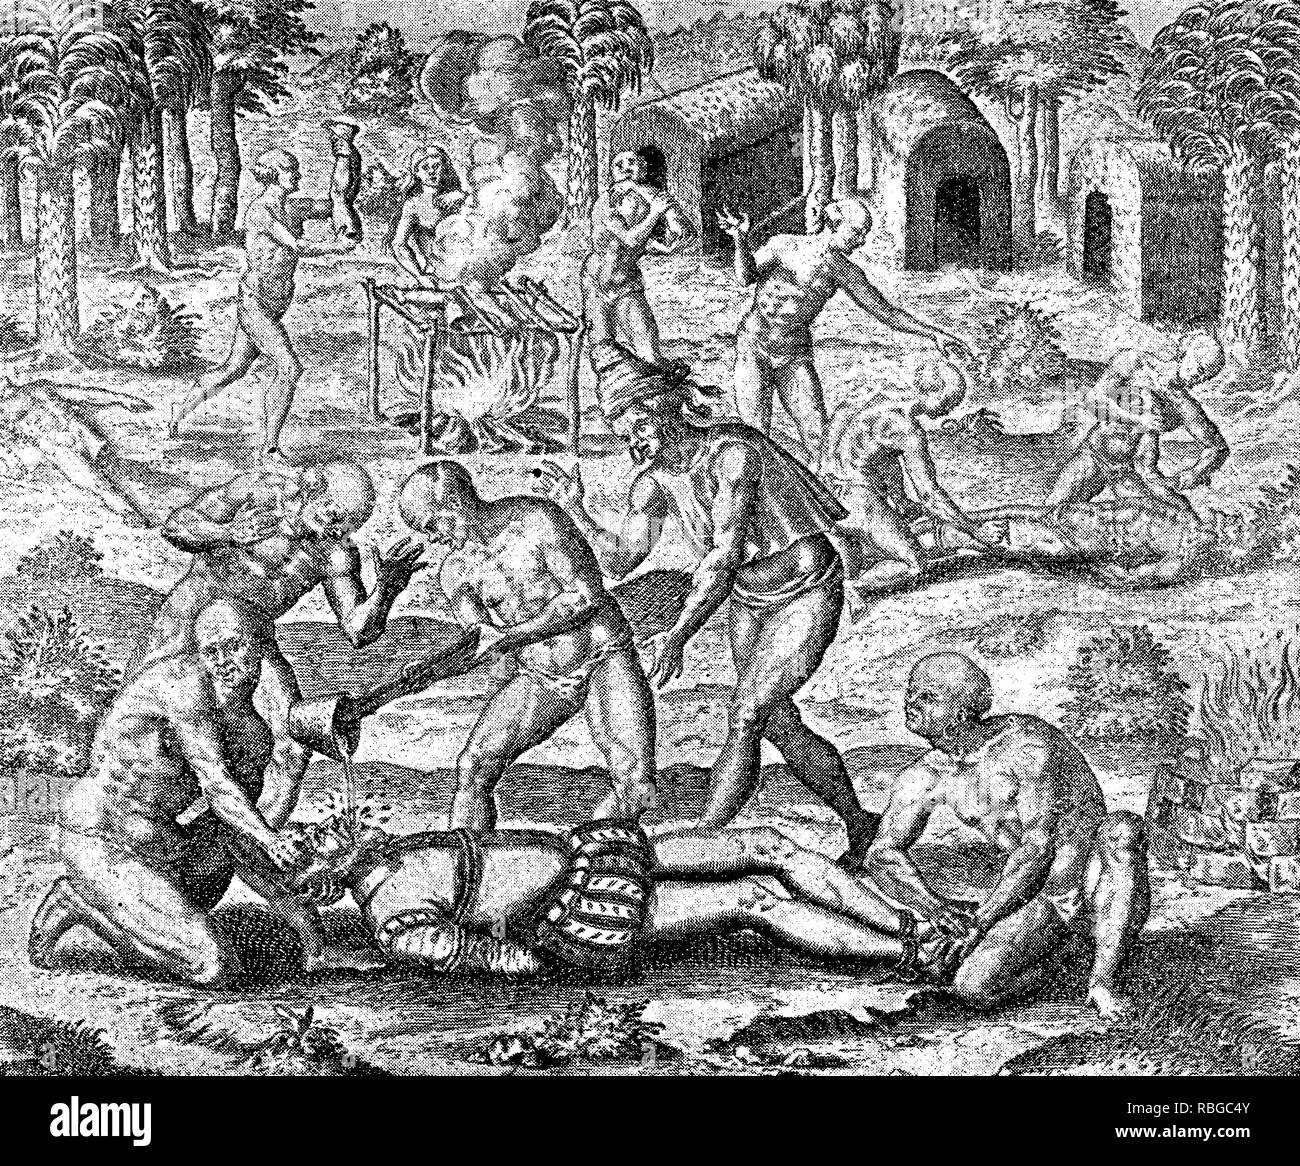 Eroberung des Inka-reiches durch spanische Eroberer Francisco Pizarro im XVI. Jahrhundert: Aborigines werfen flüssiges Gold in die Kehle eines spanischen Soldaten, weiss andere Indianer cook menschliches Fleisch Stockfoto